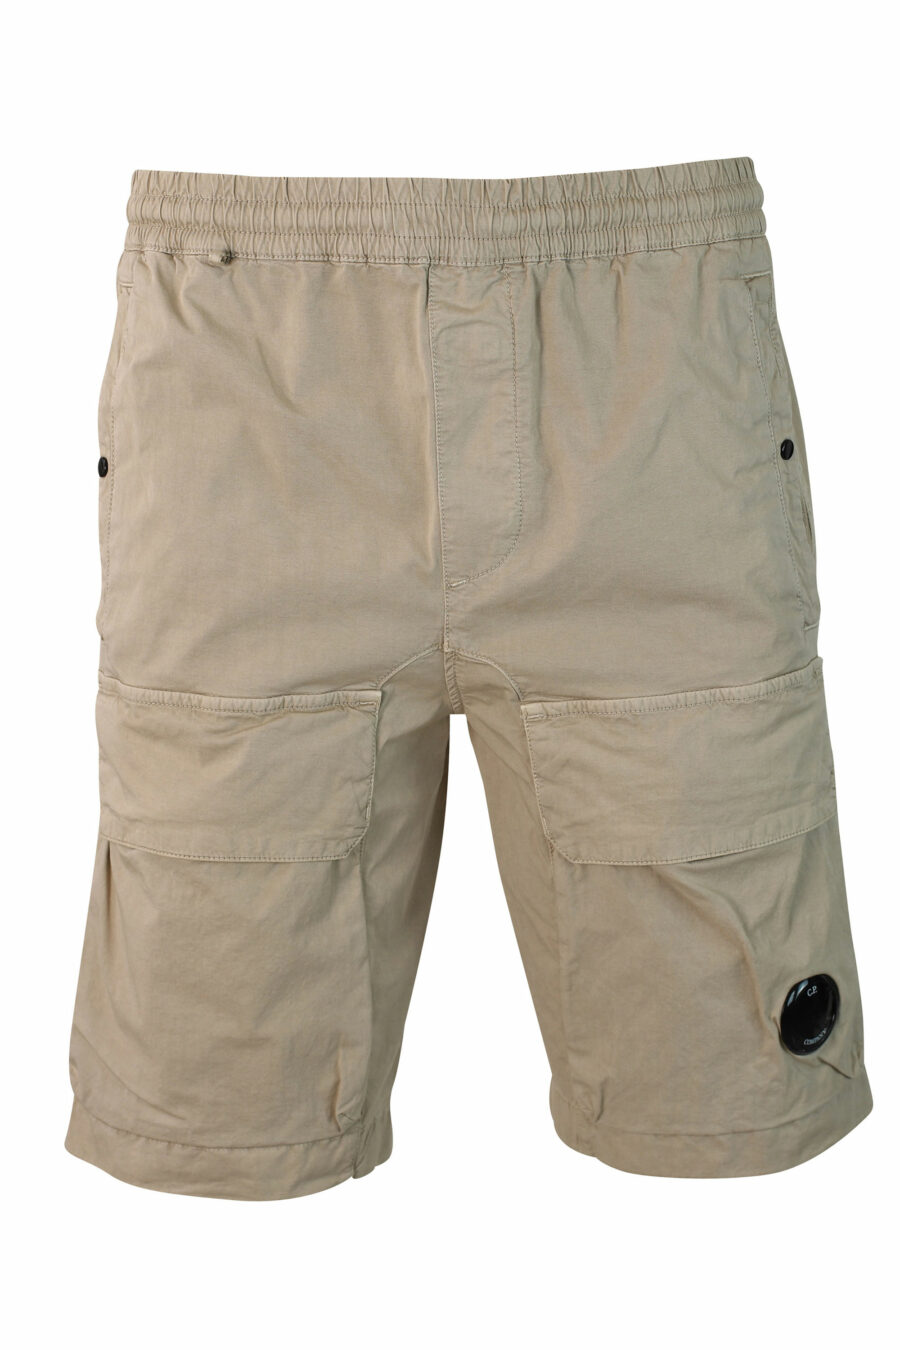 Pantalón corto beige elástico con bolsillos frontales y minilogo circular - IMG 9907